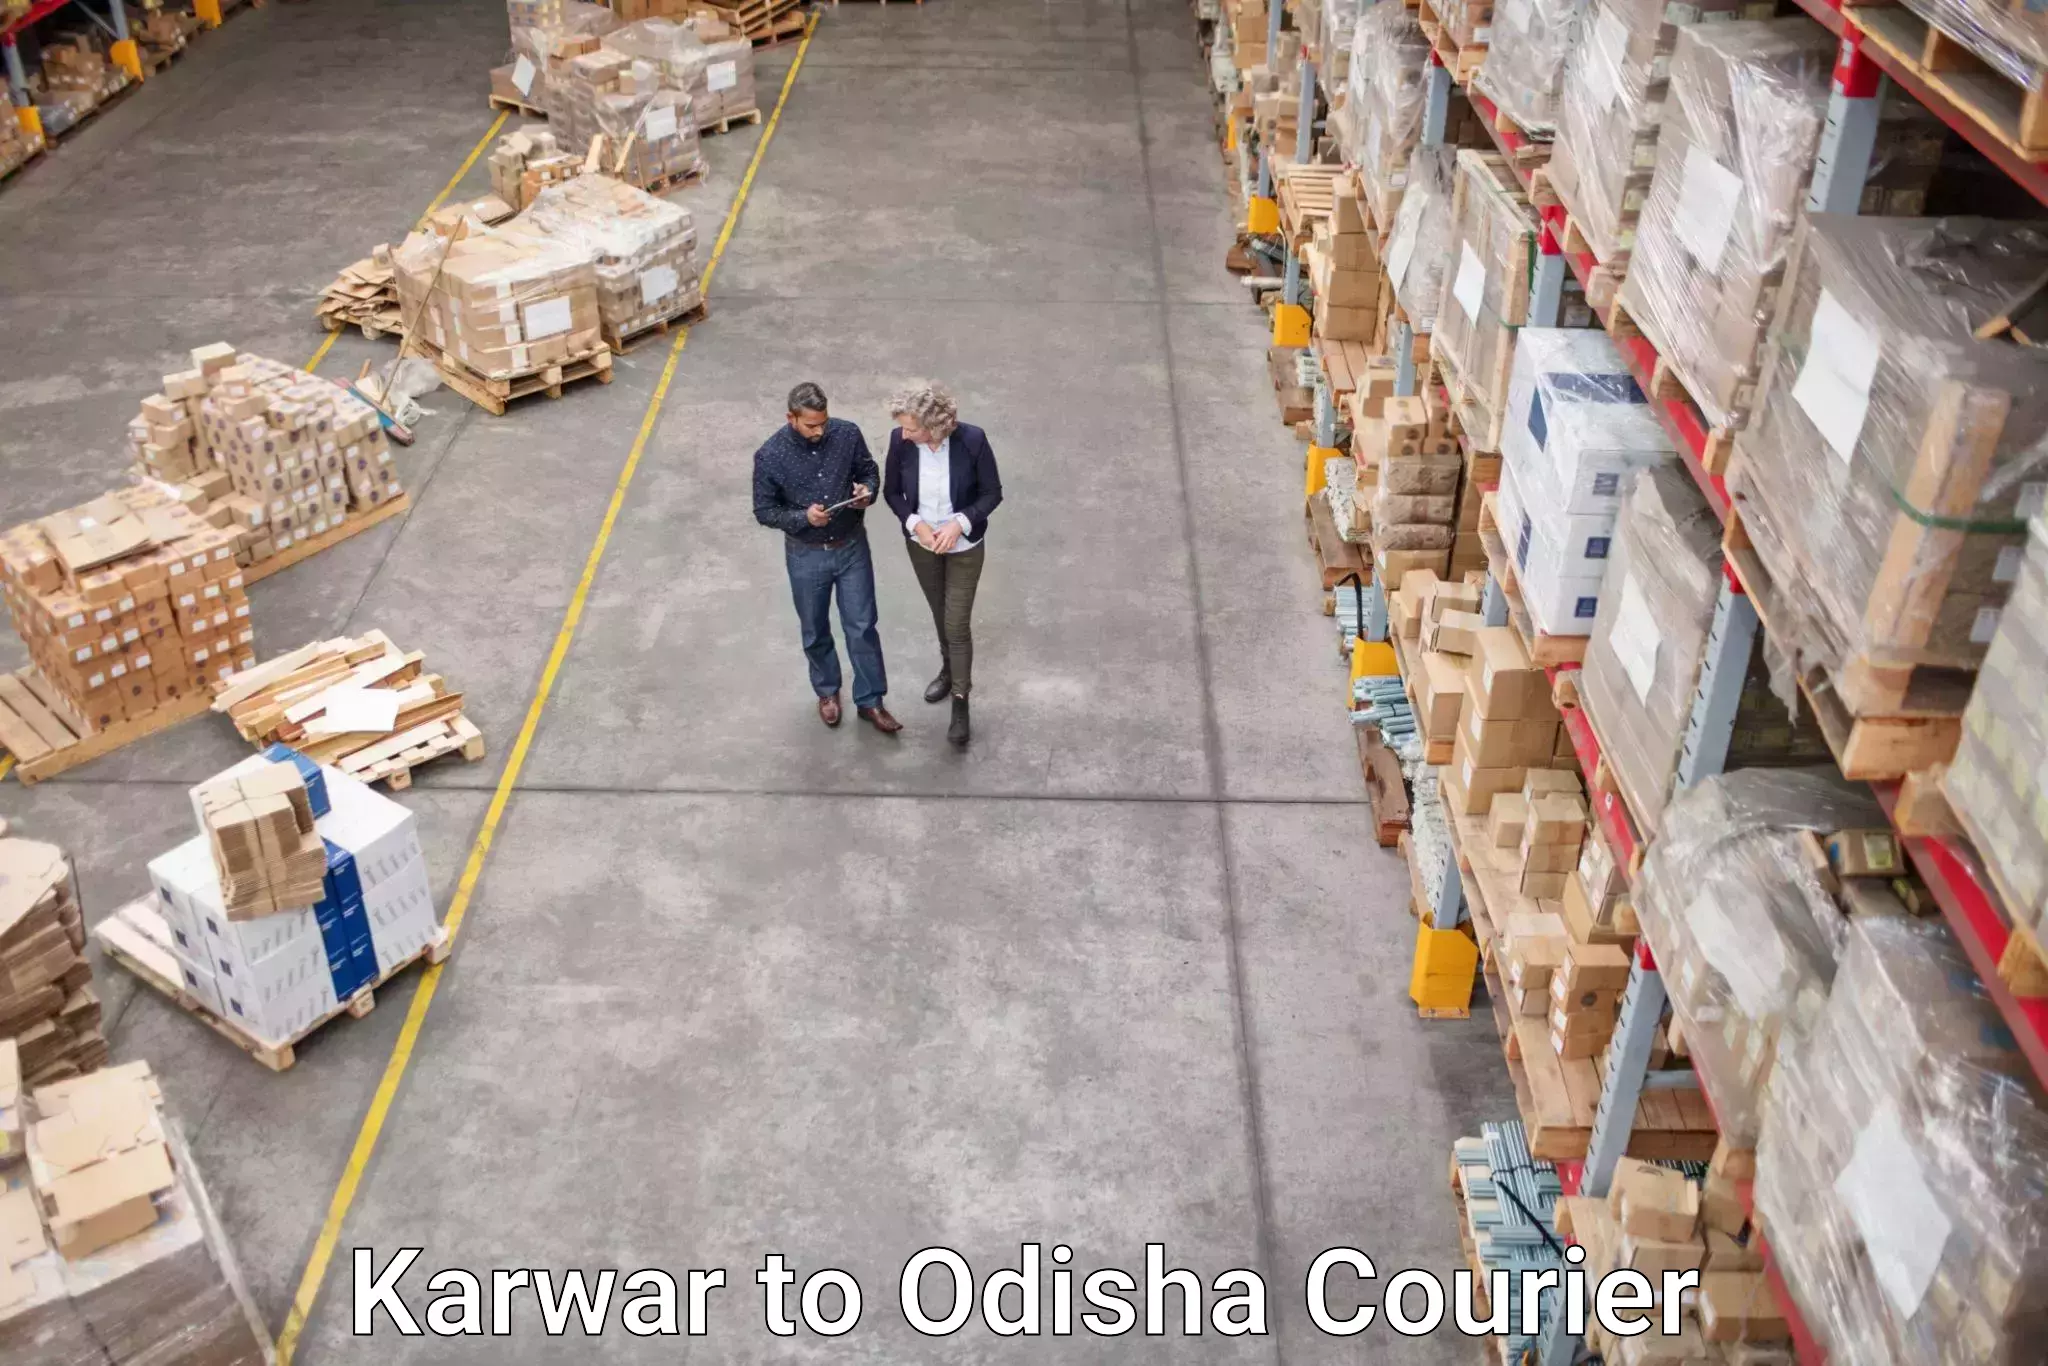 High-priority parcel service Karwar to Bhubaneswar